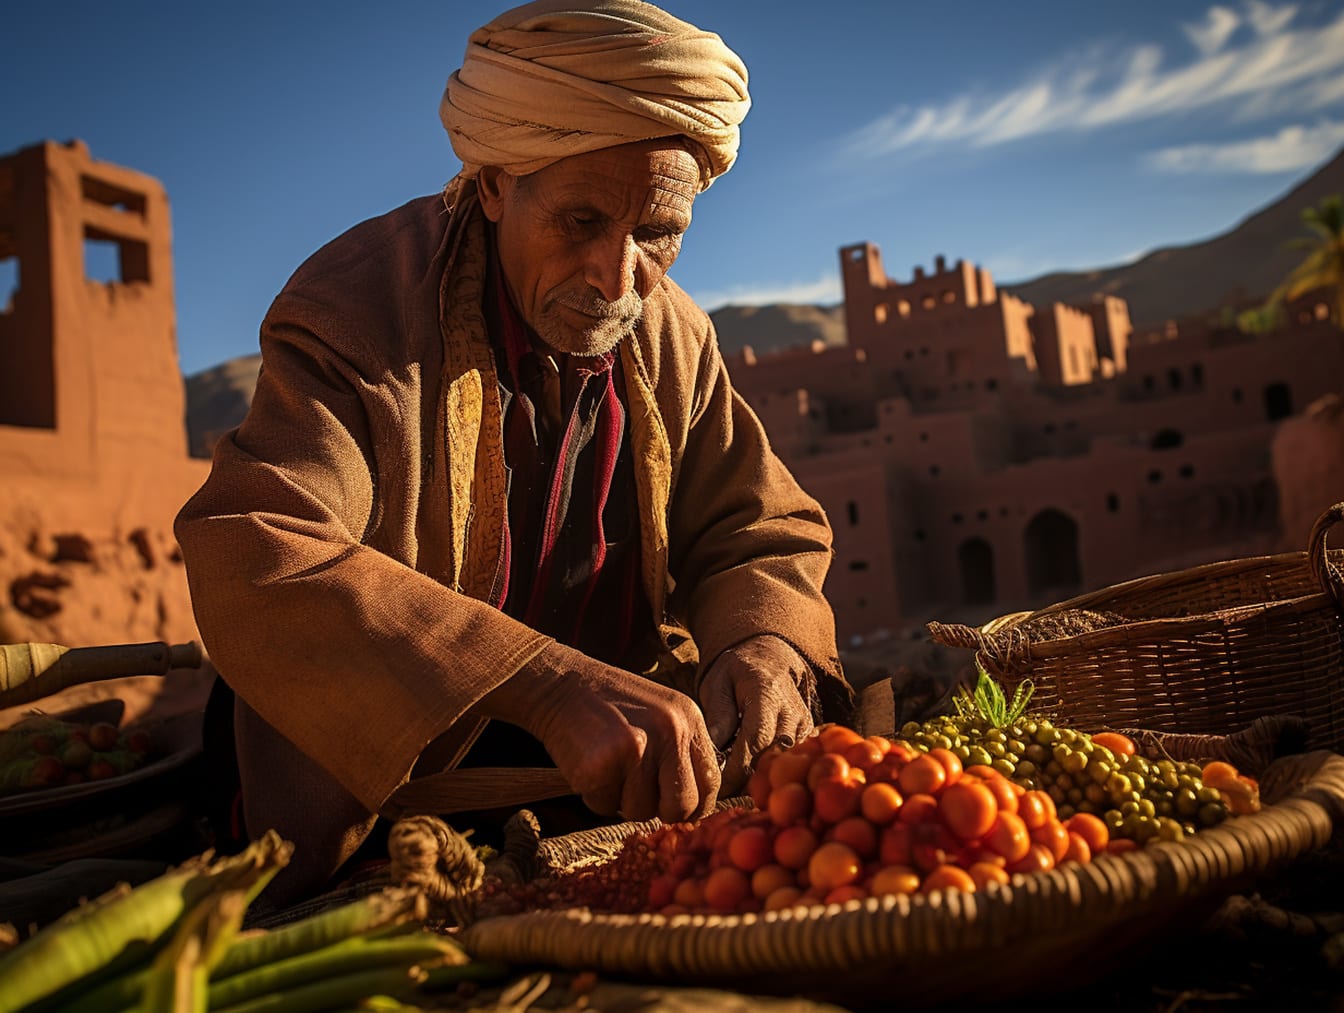 터번과 과일 바구니를 들고 있는 모로코의 남자